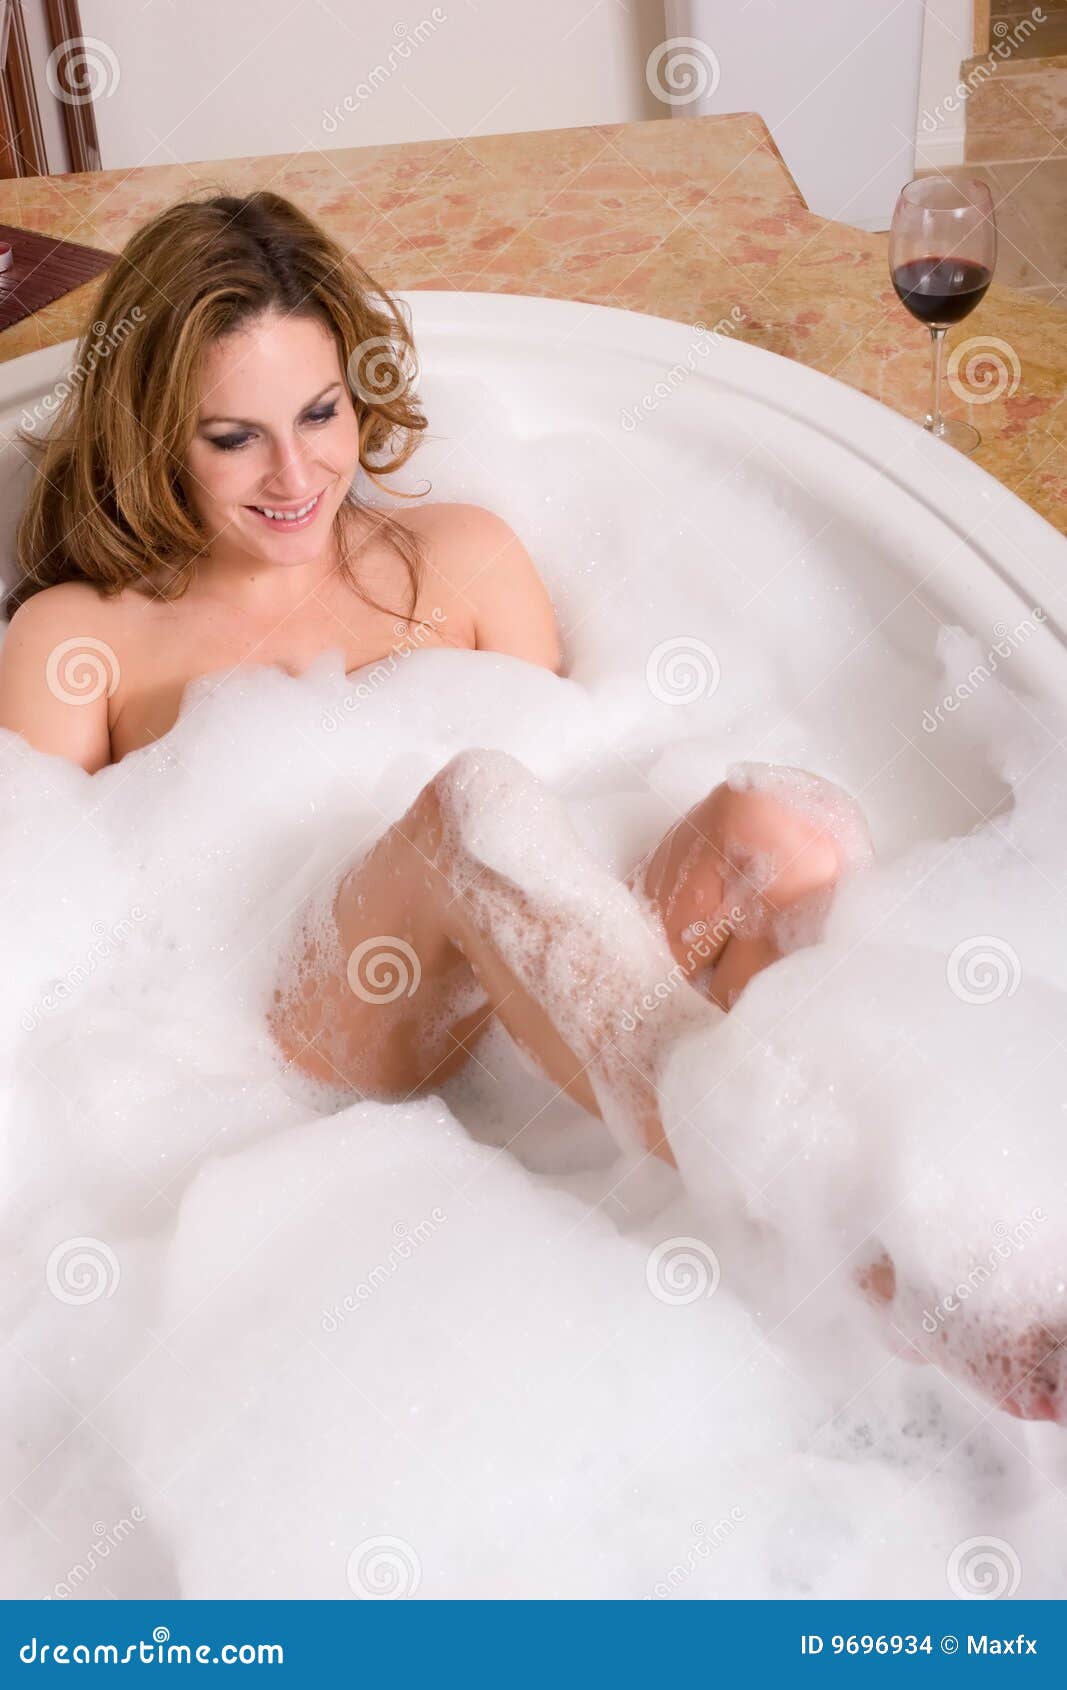 Nude Sexy Women In Bubble Baths 83